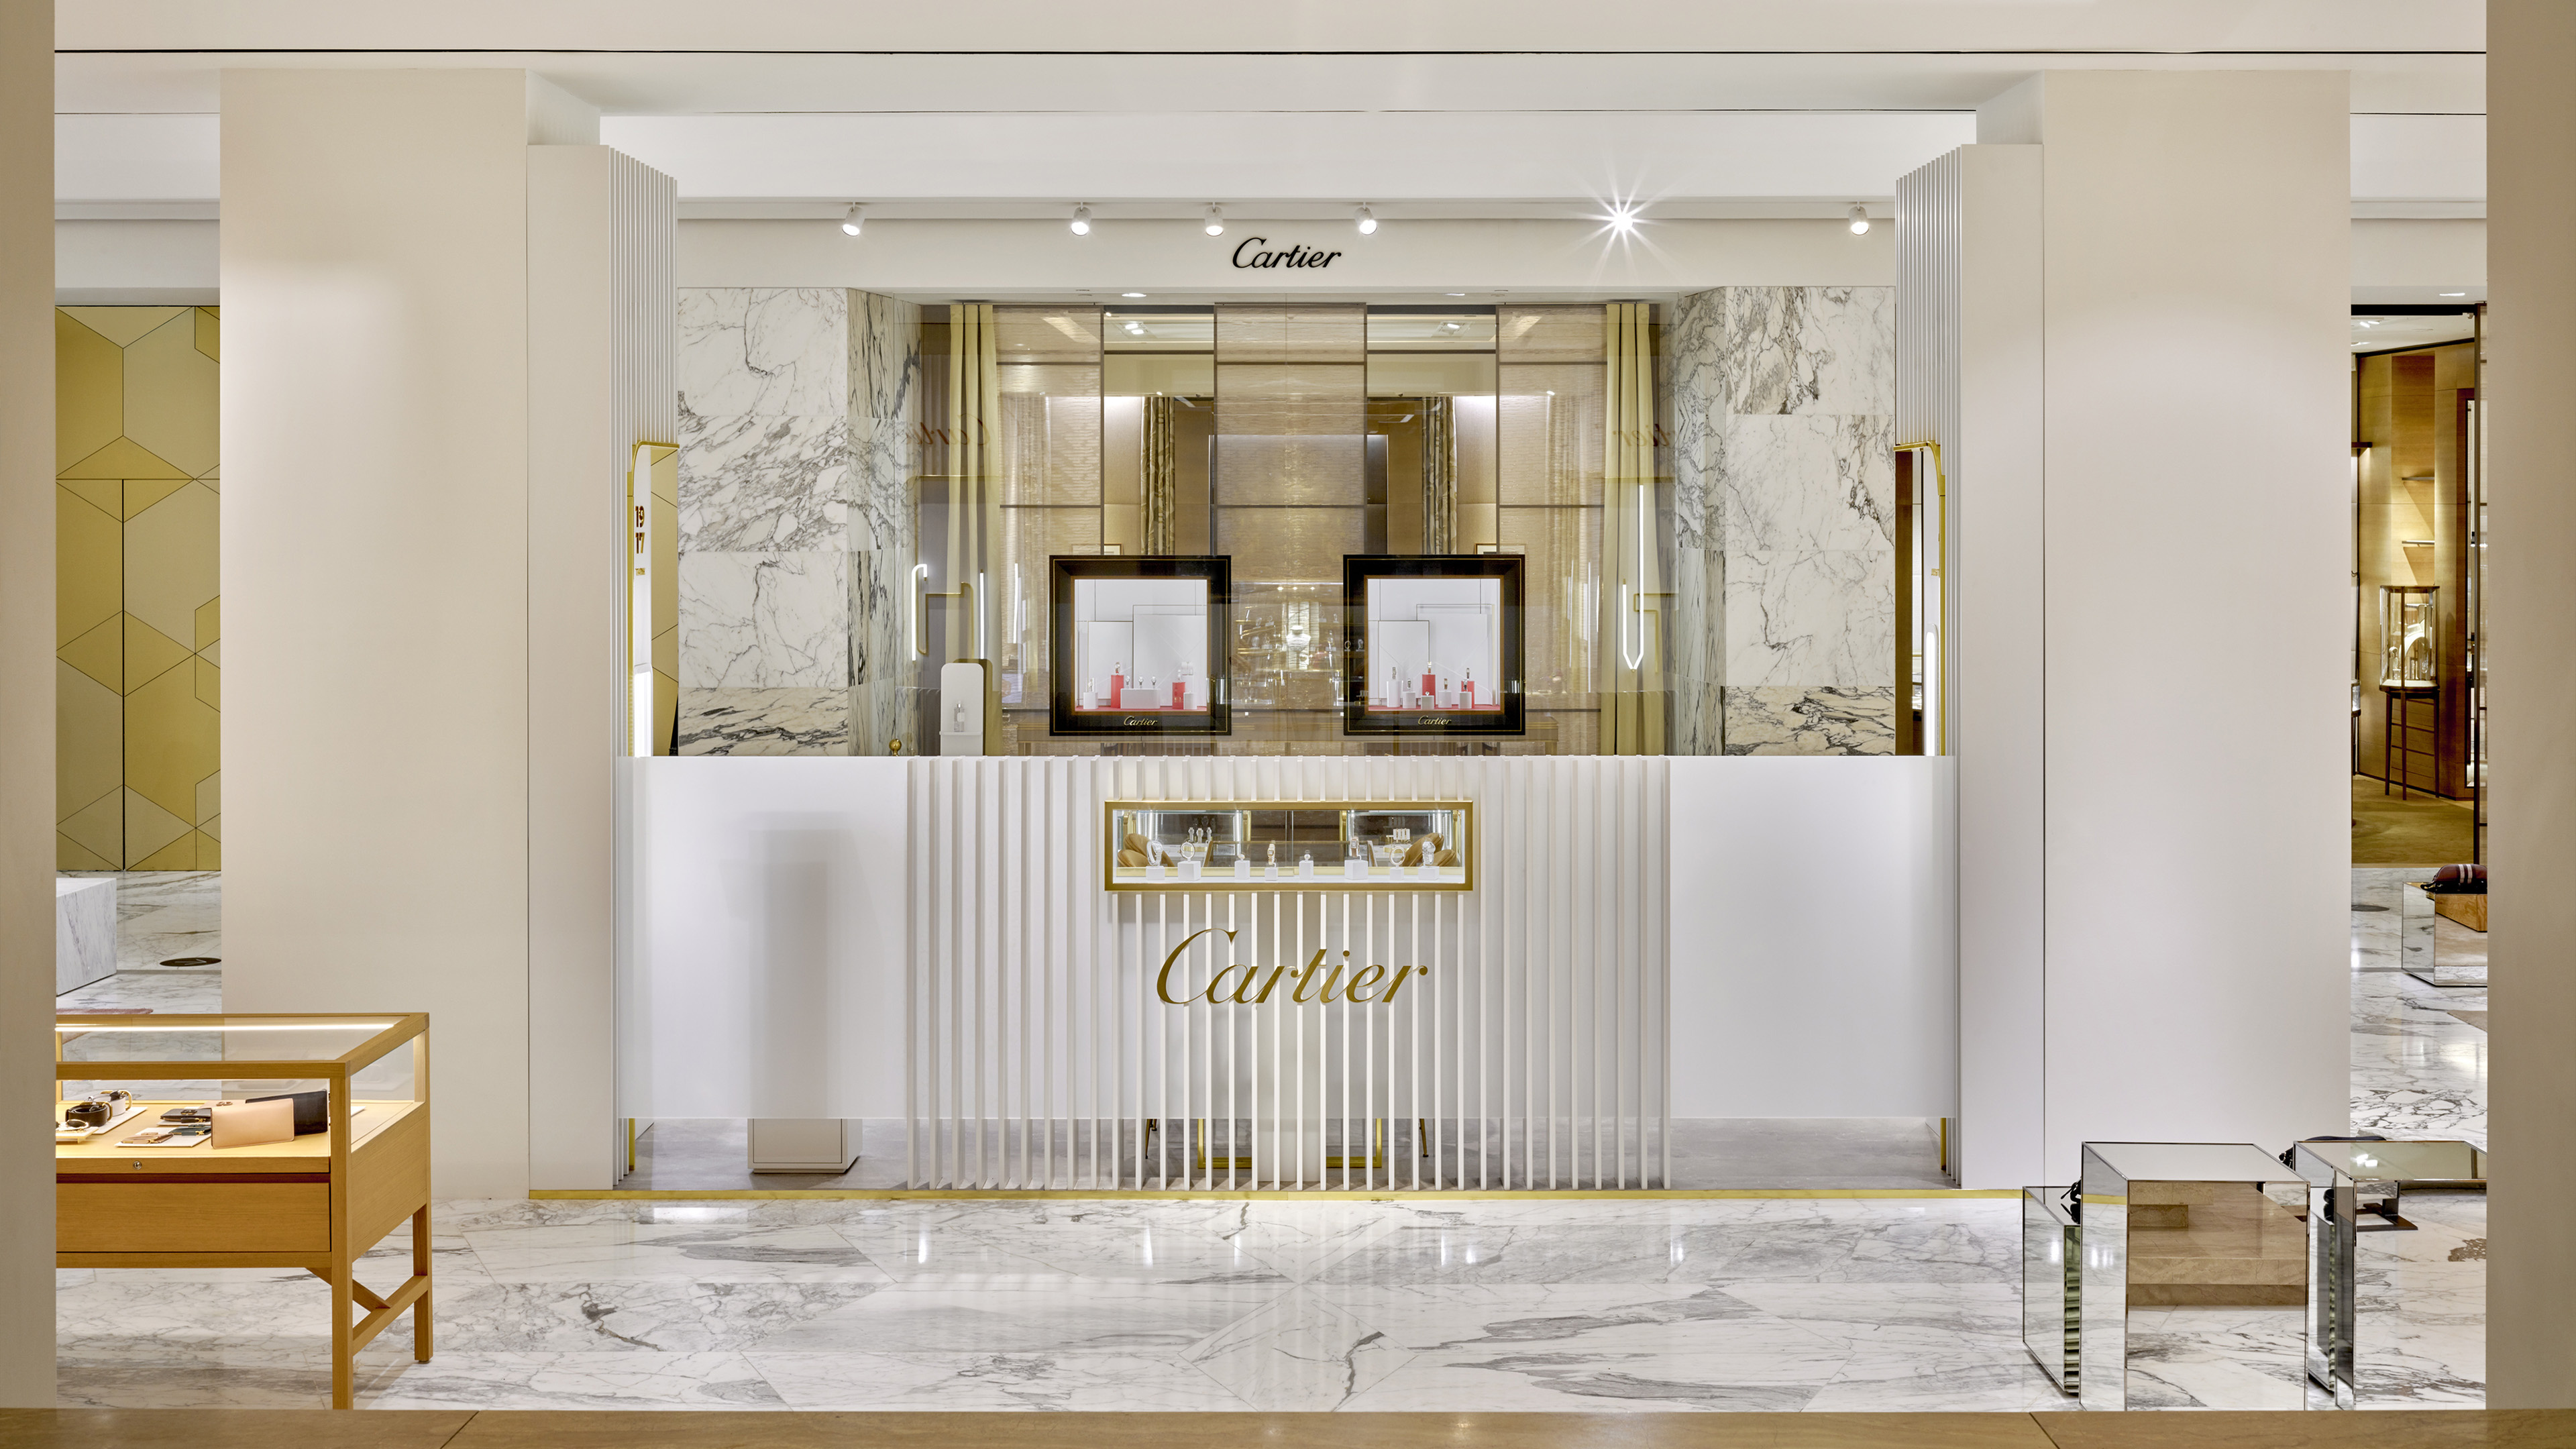 Cartier, Customized media, Luxury jewelry, Fashion brand, 3840x2160 4K Desktop